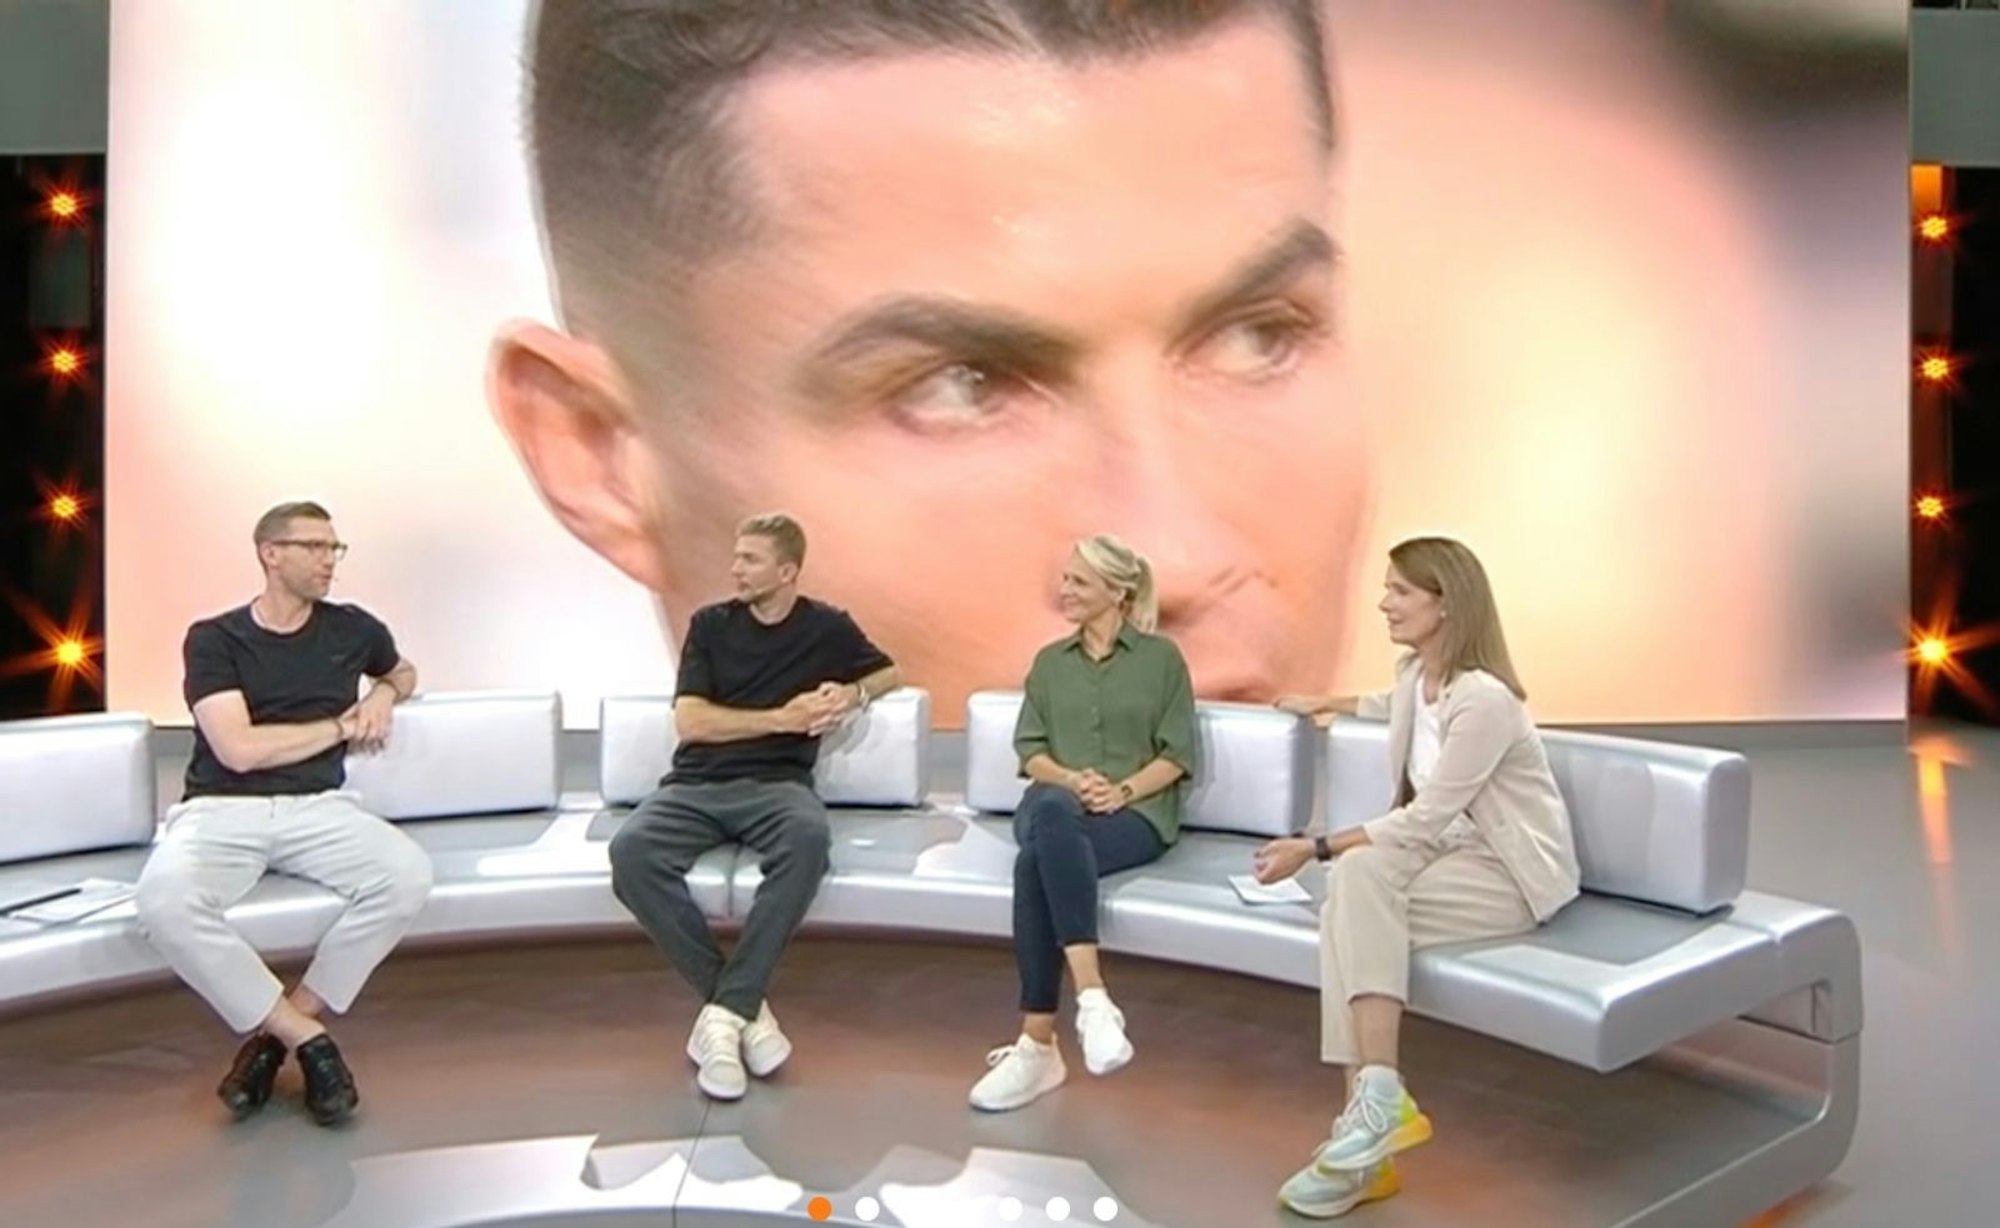 Cristiano Ronaldo steht über allen. Auch für die ZDF-Expertenrunde - und vor allem die Selfie-gierigen Flitzer in Dortmund. (Bild: ZDF)